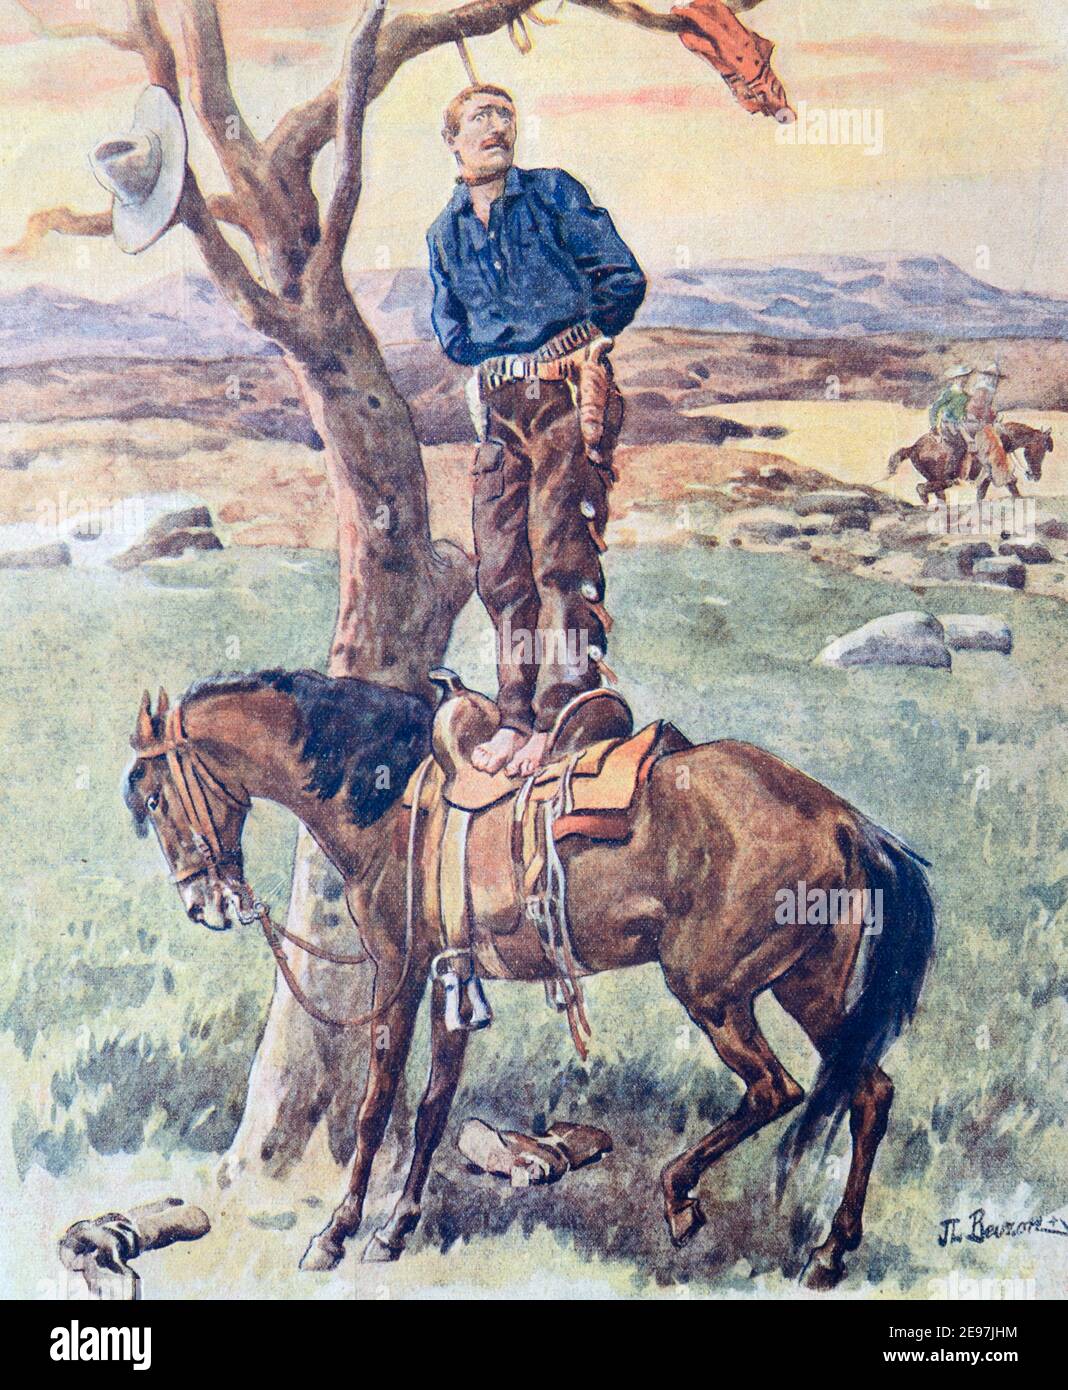 Cowboy Lynchen oder Selbstmord in den USA oder den Vereinigten Staaten von Amerika 1911 Vintage Illustration Stockfoto